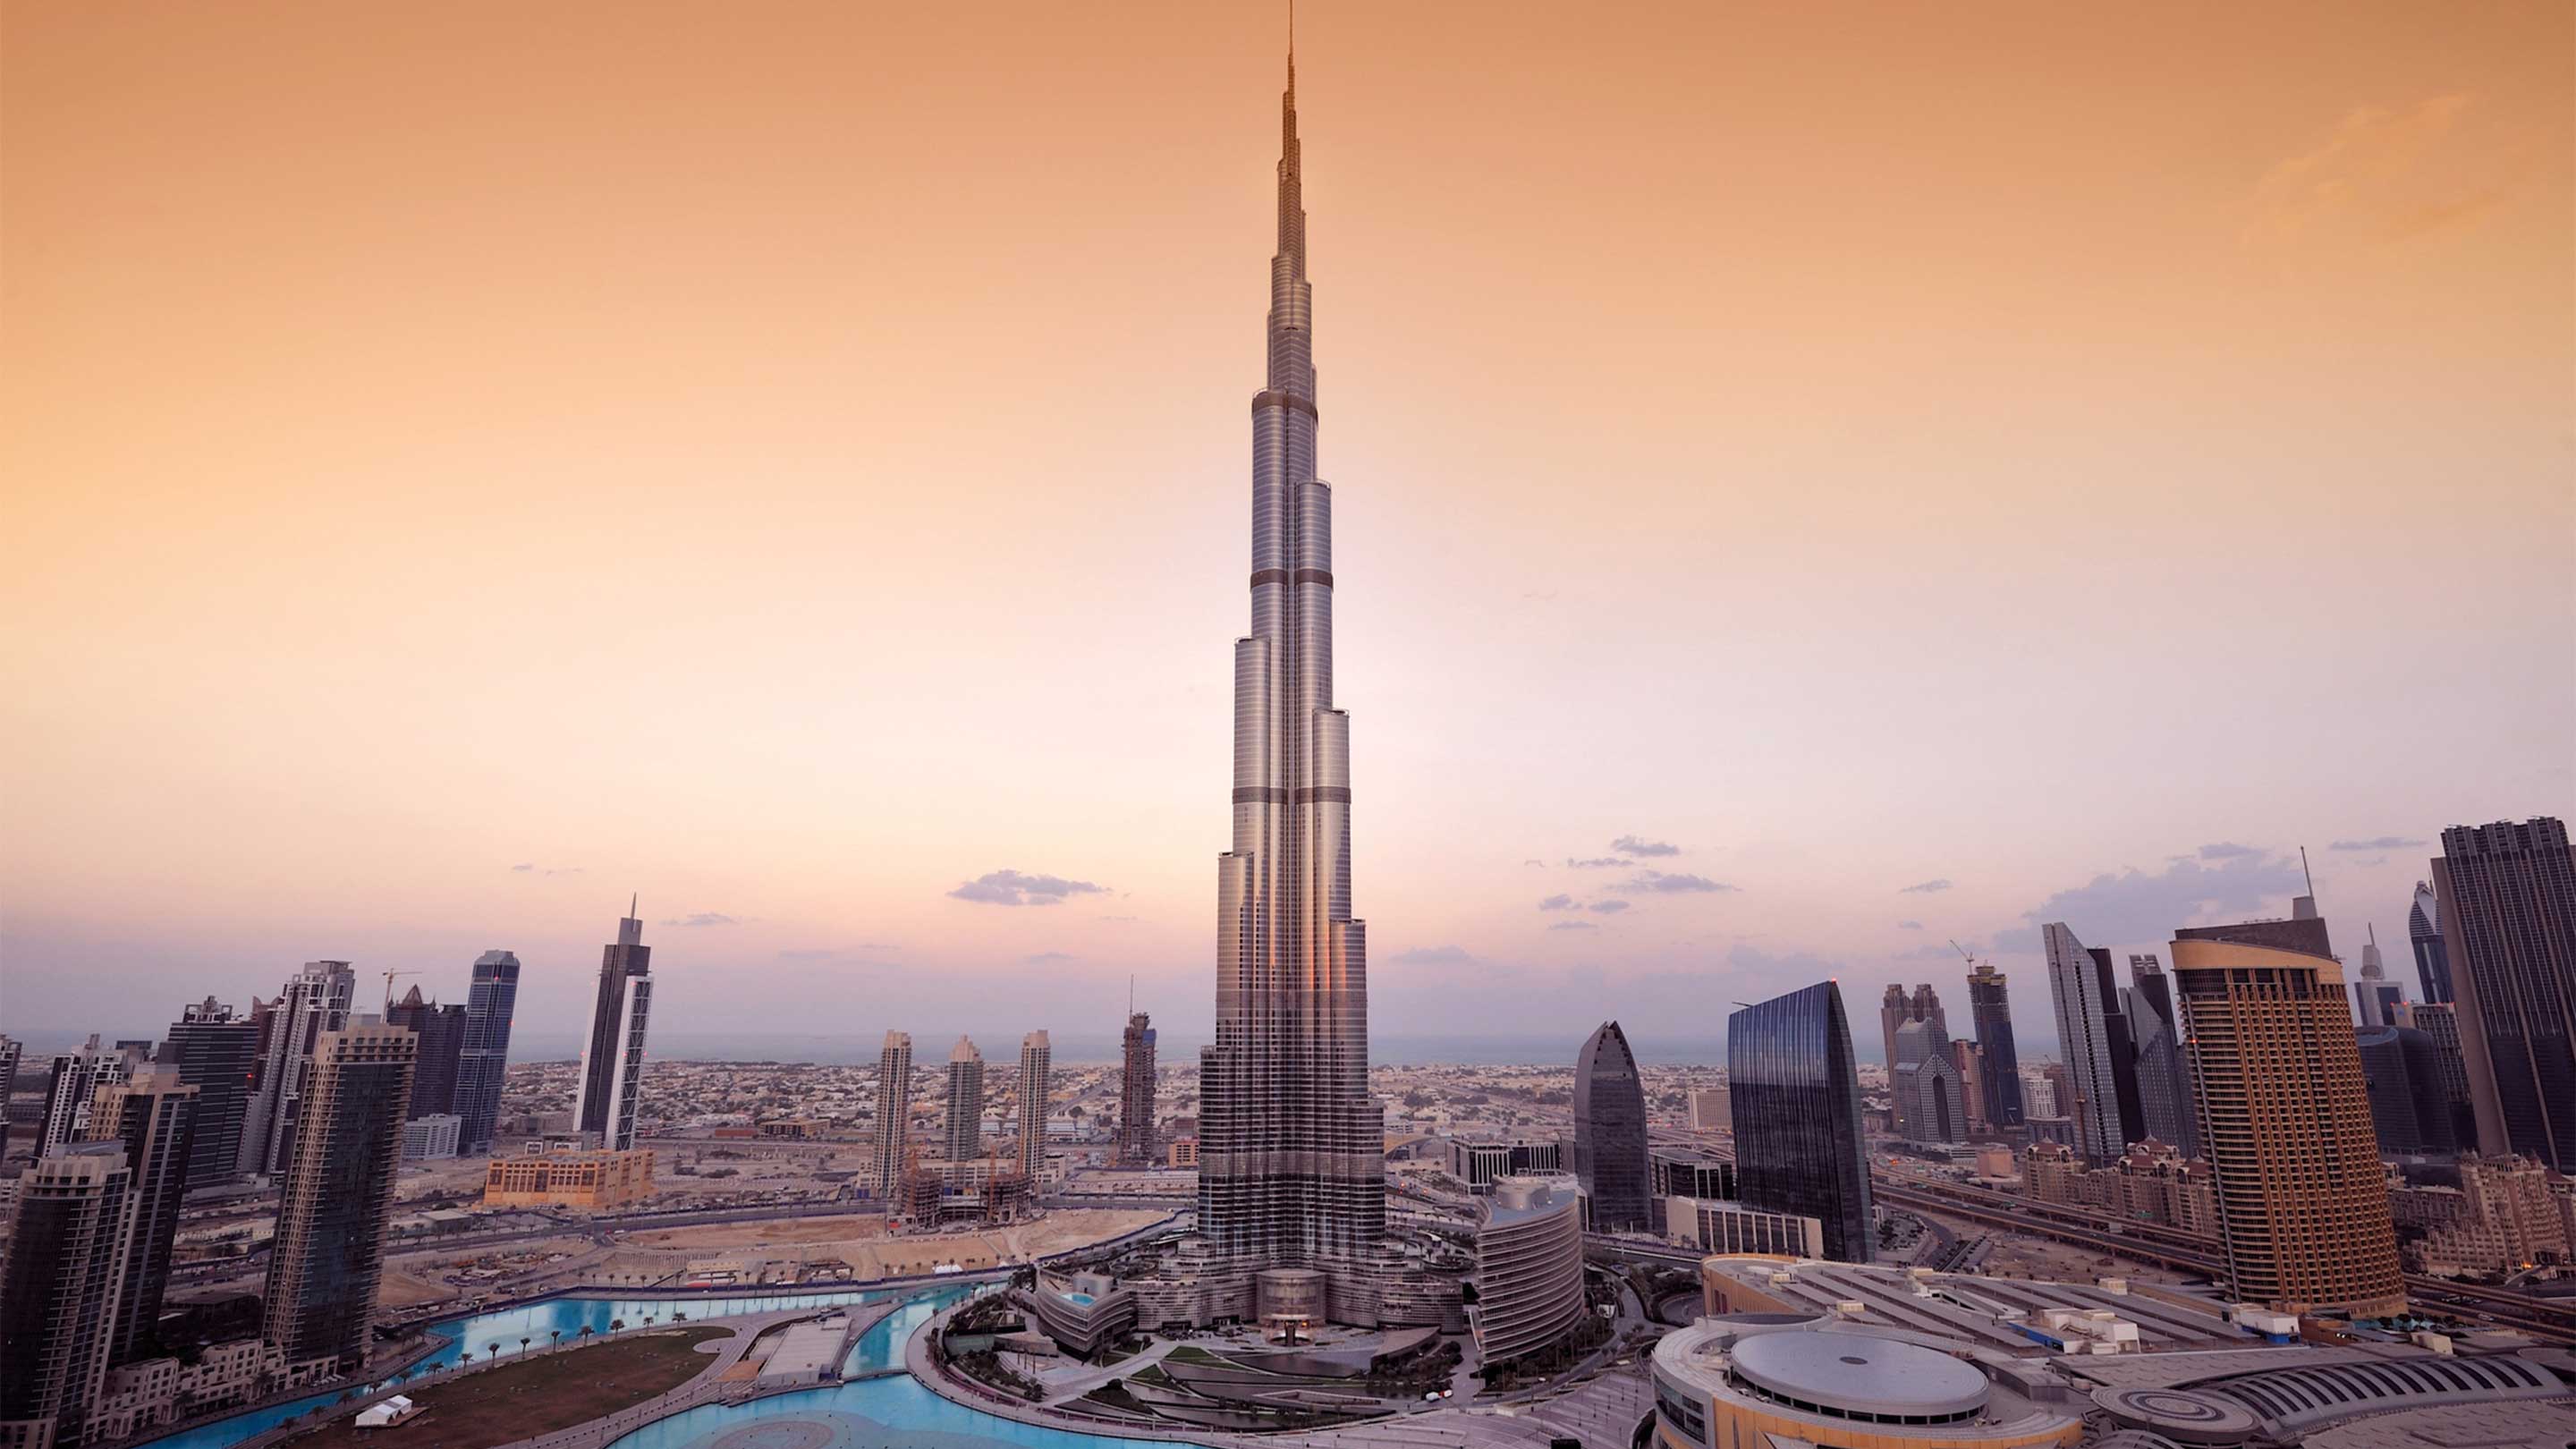 16-9 Khalifa in Dubai